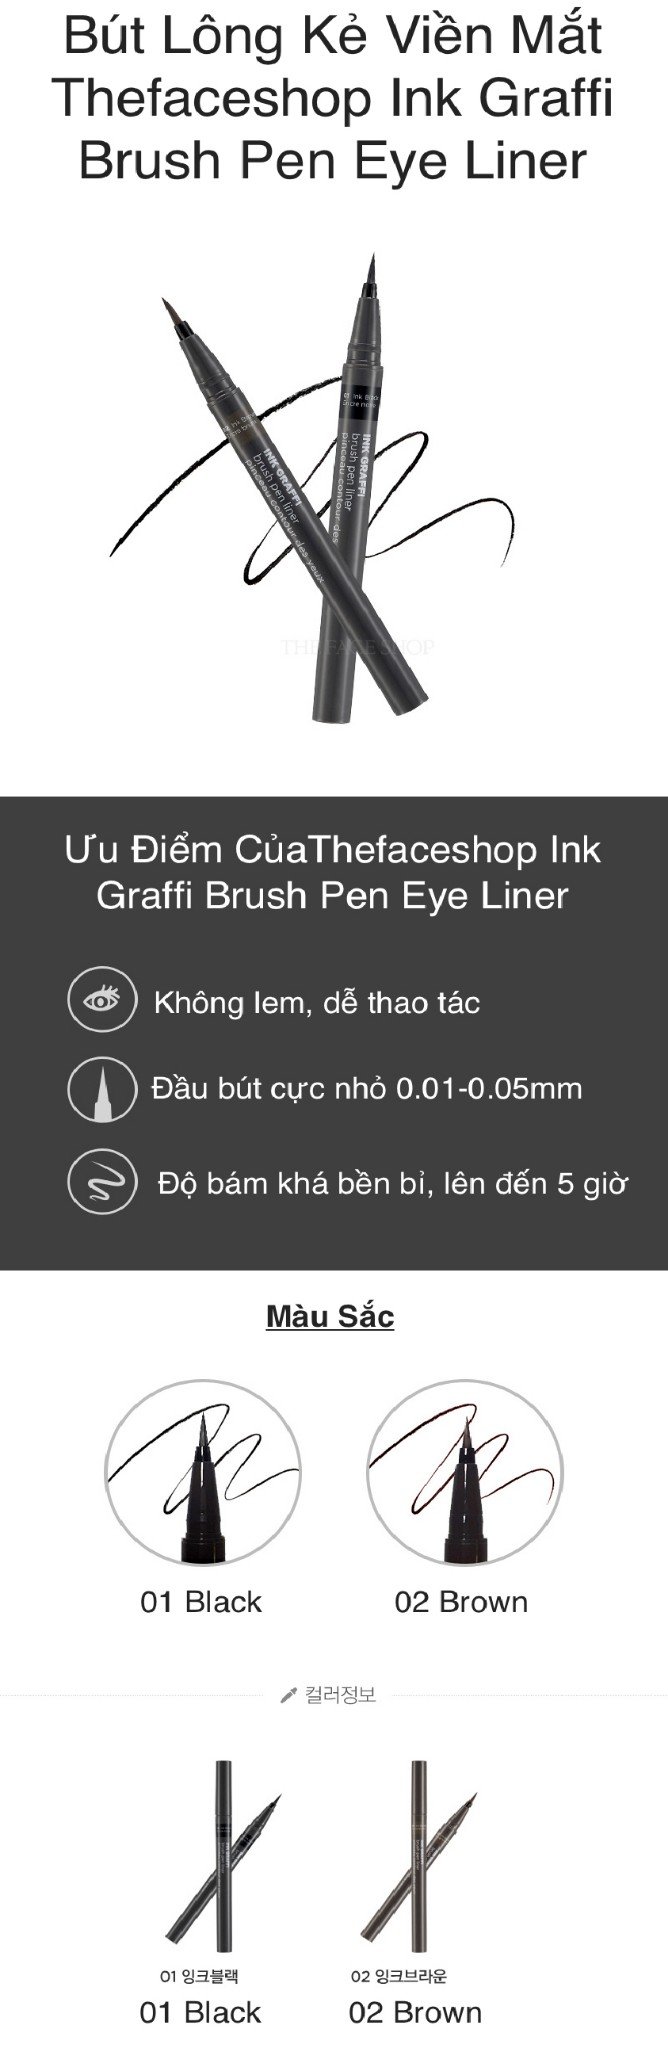 Thefaceshop Ink Graffi Brush Pen Eye Liner